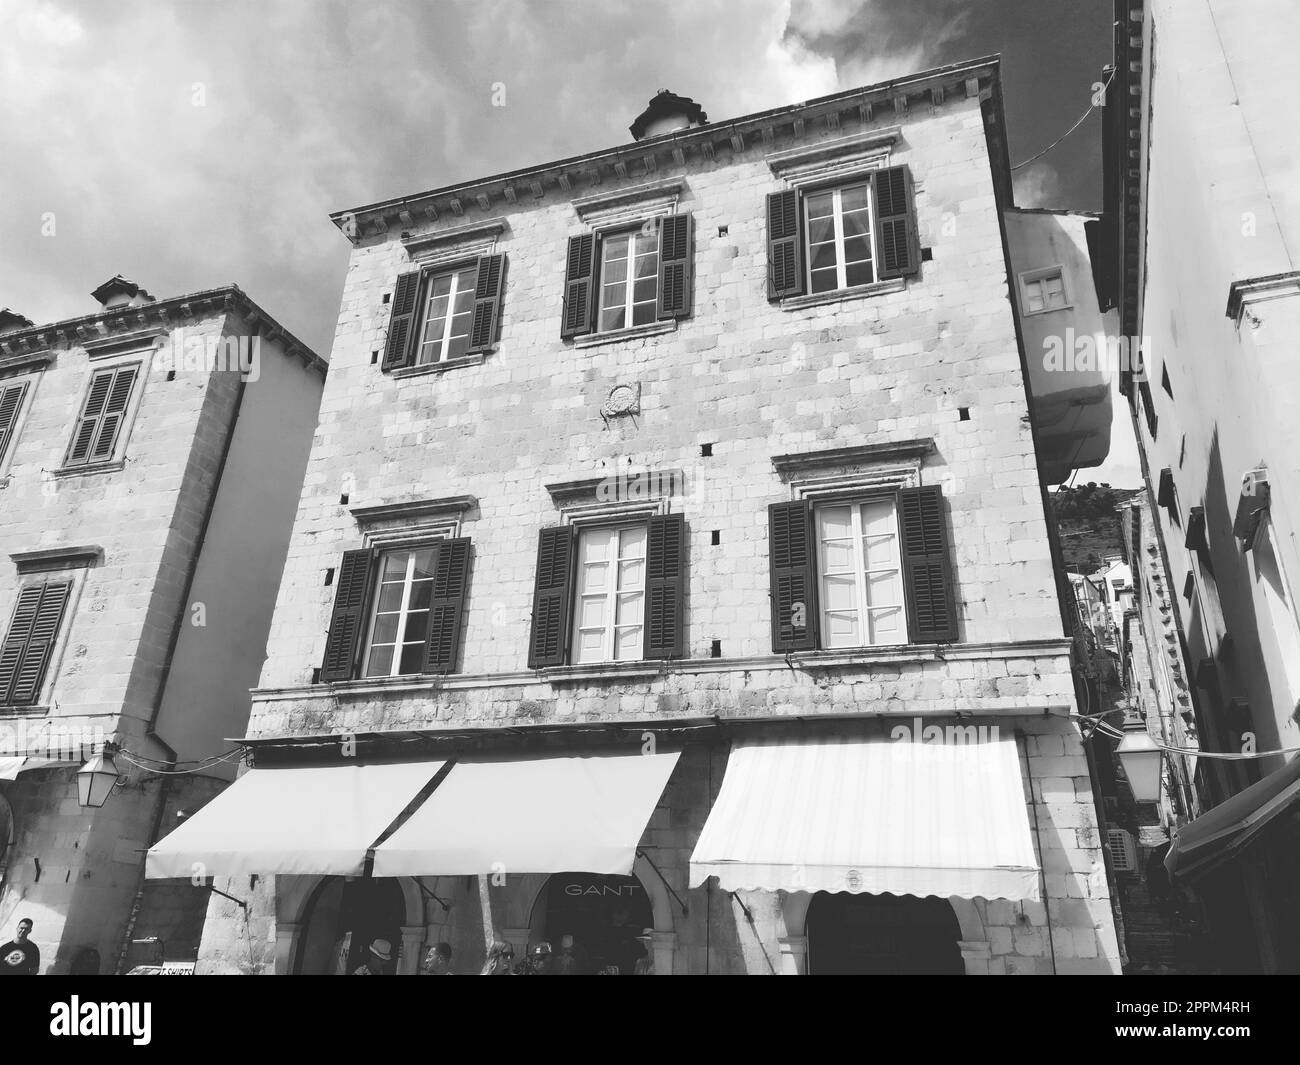 Stradun, Stradone ist die Hauptstraße des historischen Stadtzentrums von Dubrovnik in Kroatien. Architektonische Sehenswürdigkeiten. Ein beliebter Ort für touristische Spaziergänge. 14. August 2022 Schwarzweiß Stockfoto